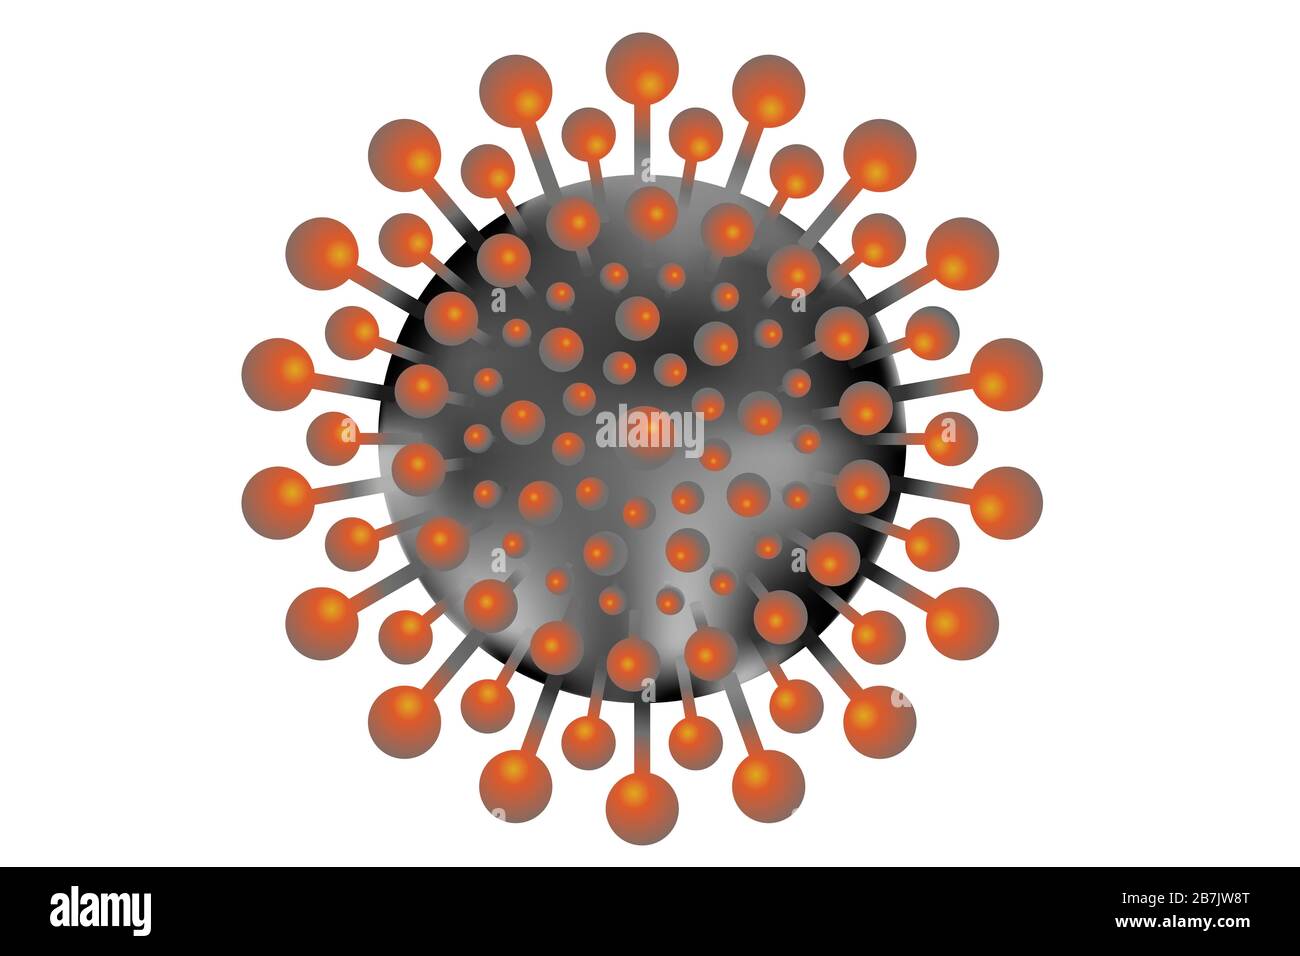 Illustrazione del vettore di coronavirus del virus Covid-19 da Wuhan Cina. In nero e arancione. Foto Stock